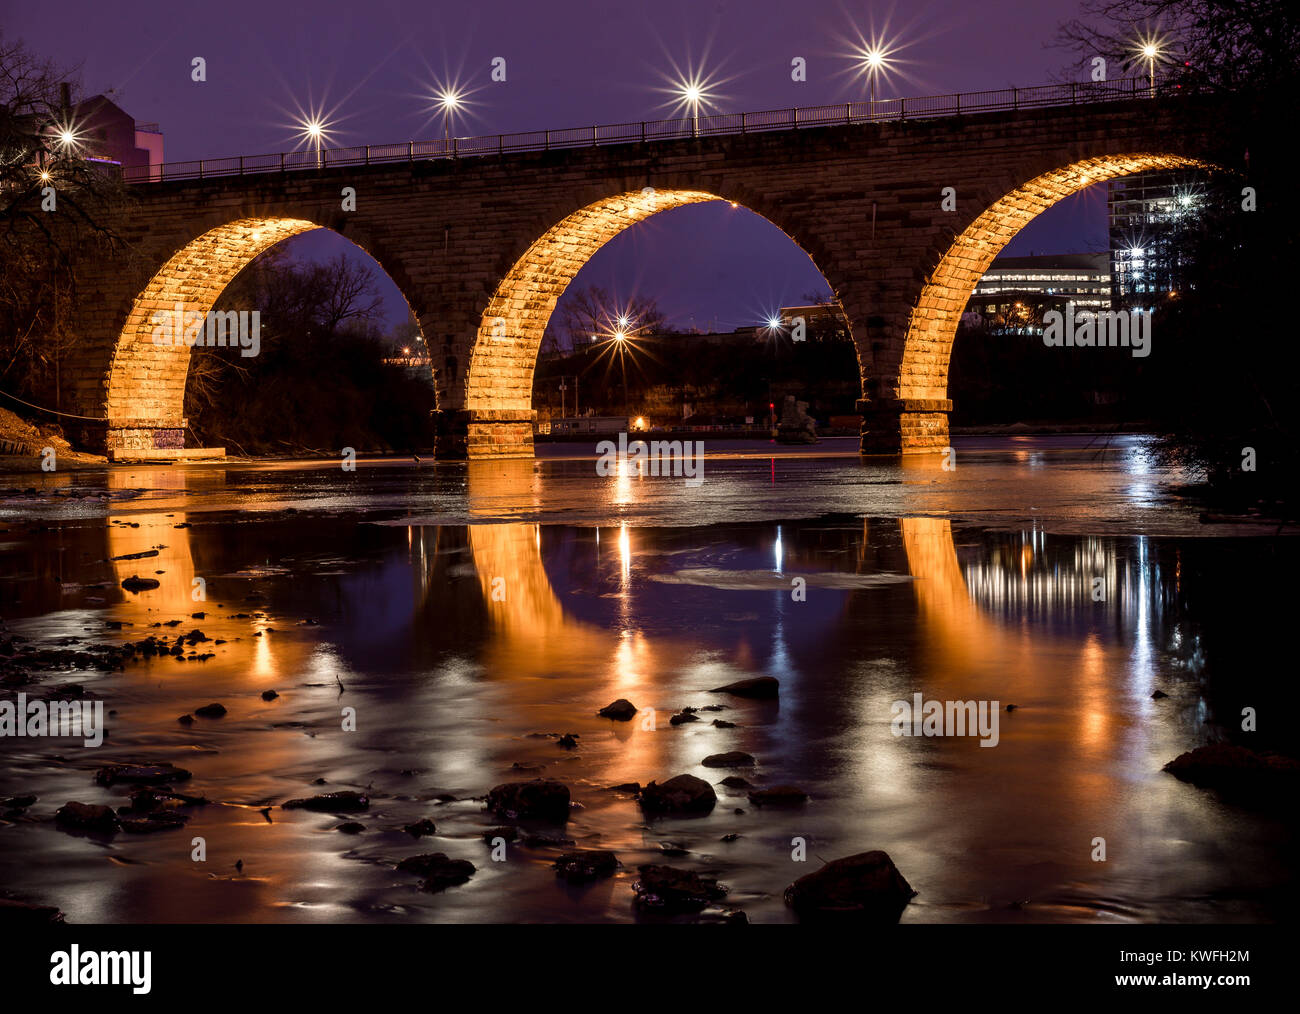 Exposición larga noche azul crepúsculo hora tiro de piedra del Arco del puente de Minneapolis, Minnesota, a orillas del río Mississippi Foto de stock